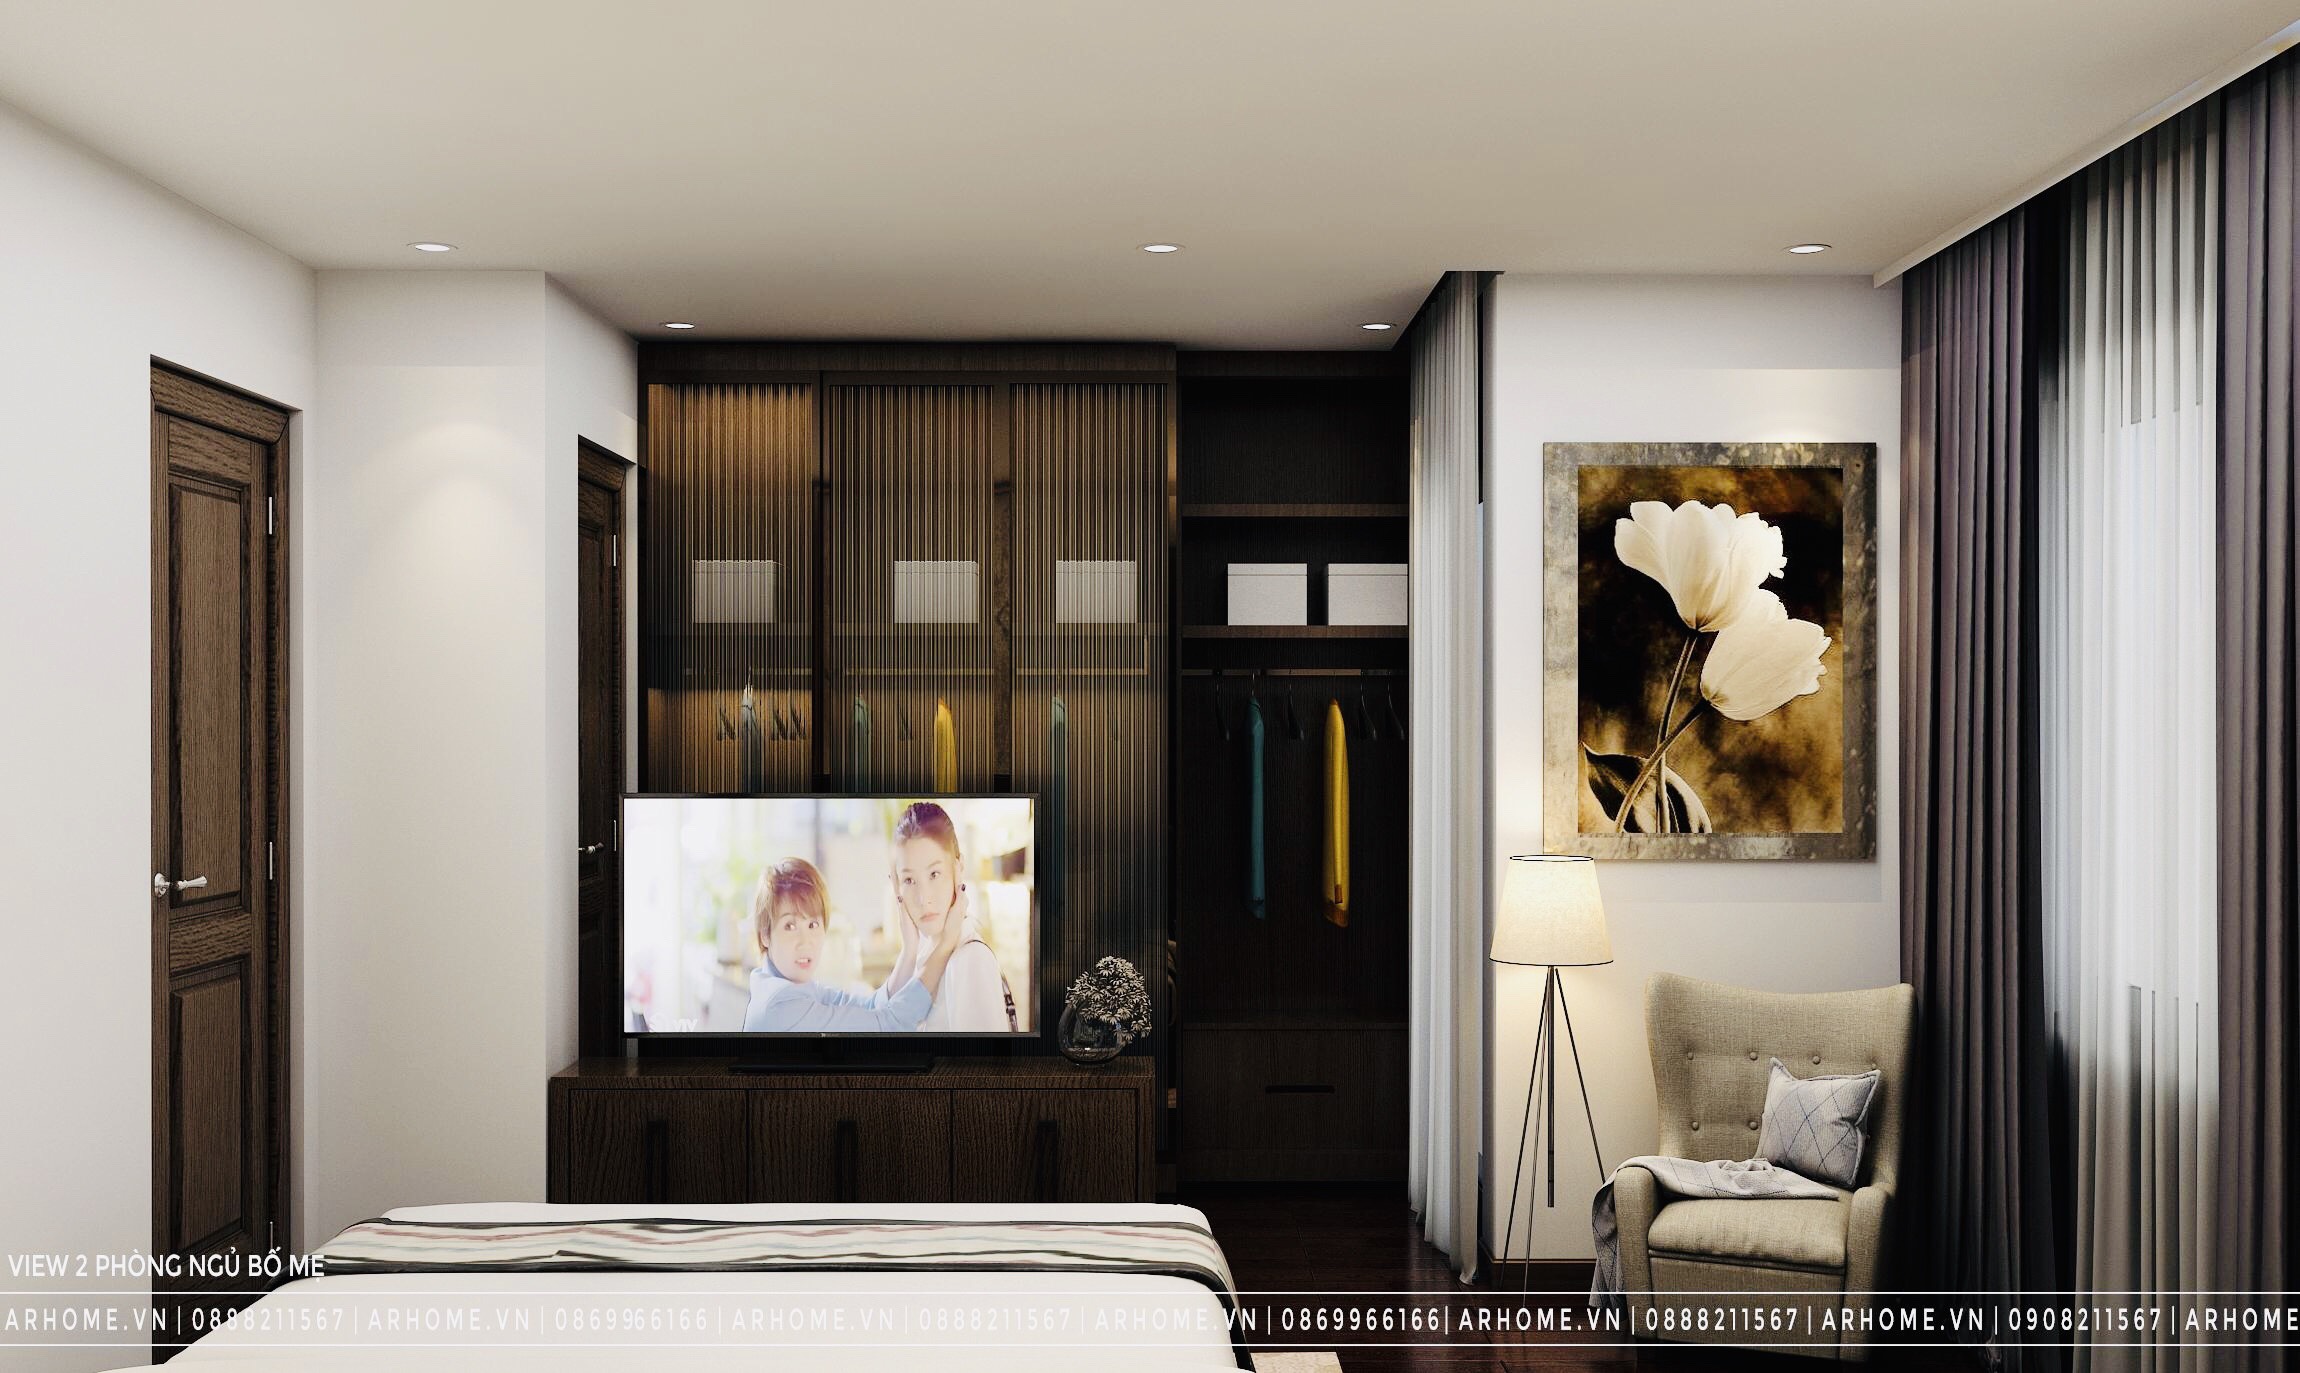 Thiết kế nội thất Nhà tại Hà Nội Hiện đại & độc đáo trong thiết kế nội thất liền kề Gamuda Garden của chú Hùng 1604312102 5